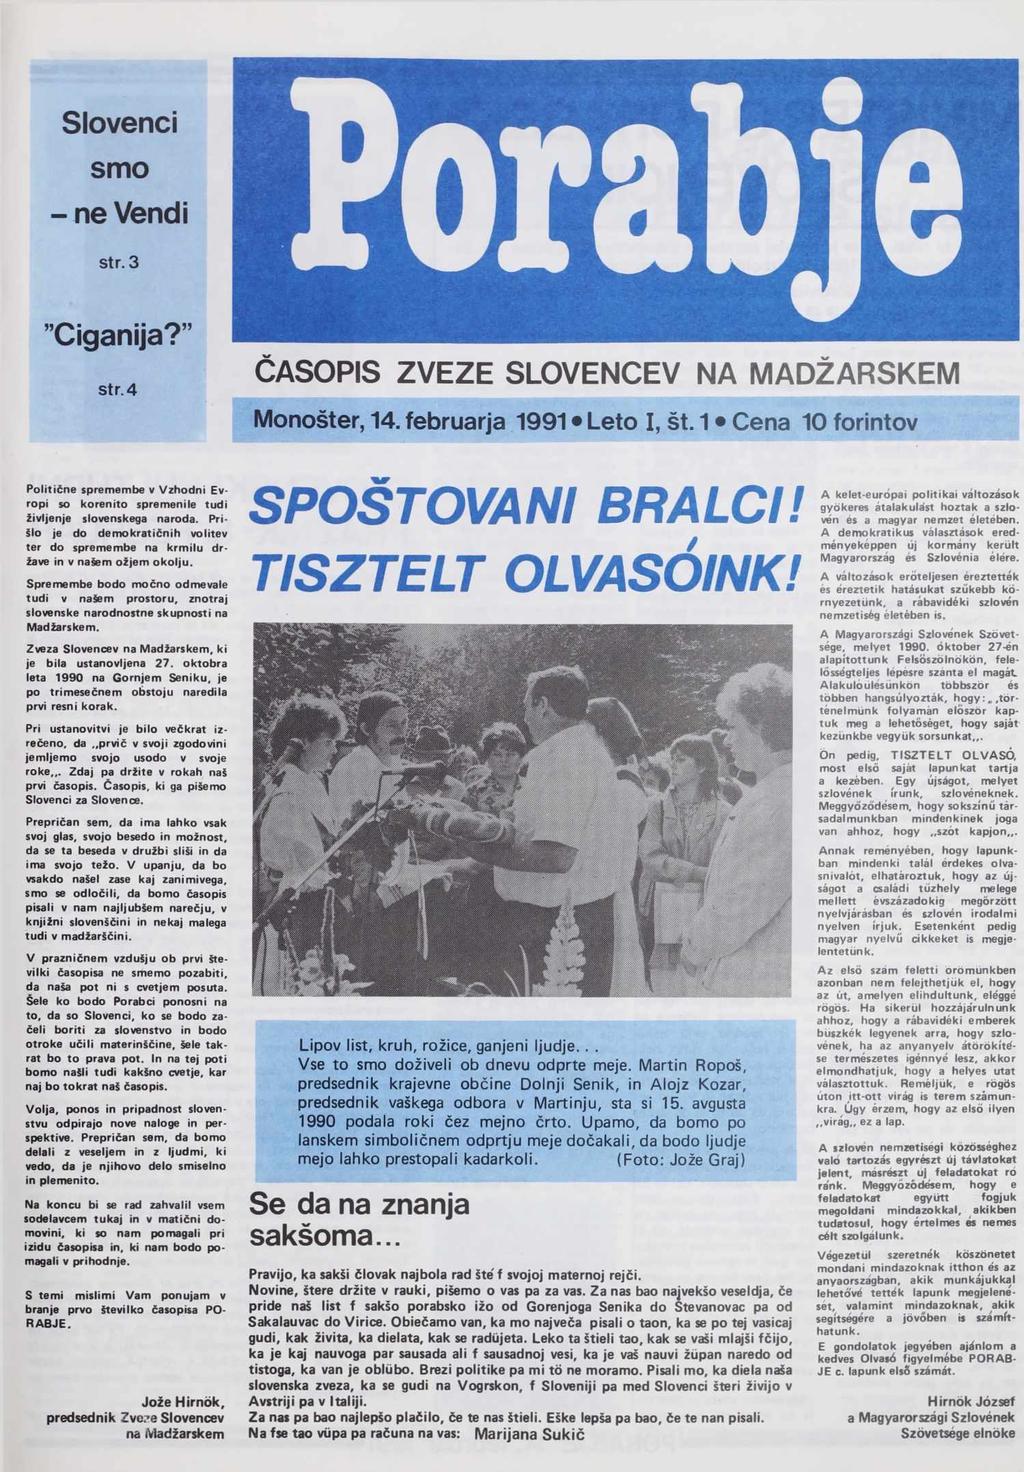 Slovenci smo - ne Vendi str. 3 "Ciganija? Str. 4 ČASOPIS ZVEZE SLOVENCEV NA MADŽARSKEM Monošter, 14. februarja 1991 Leto I, št.